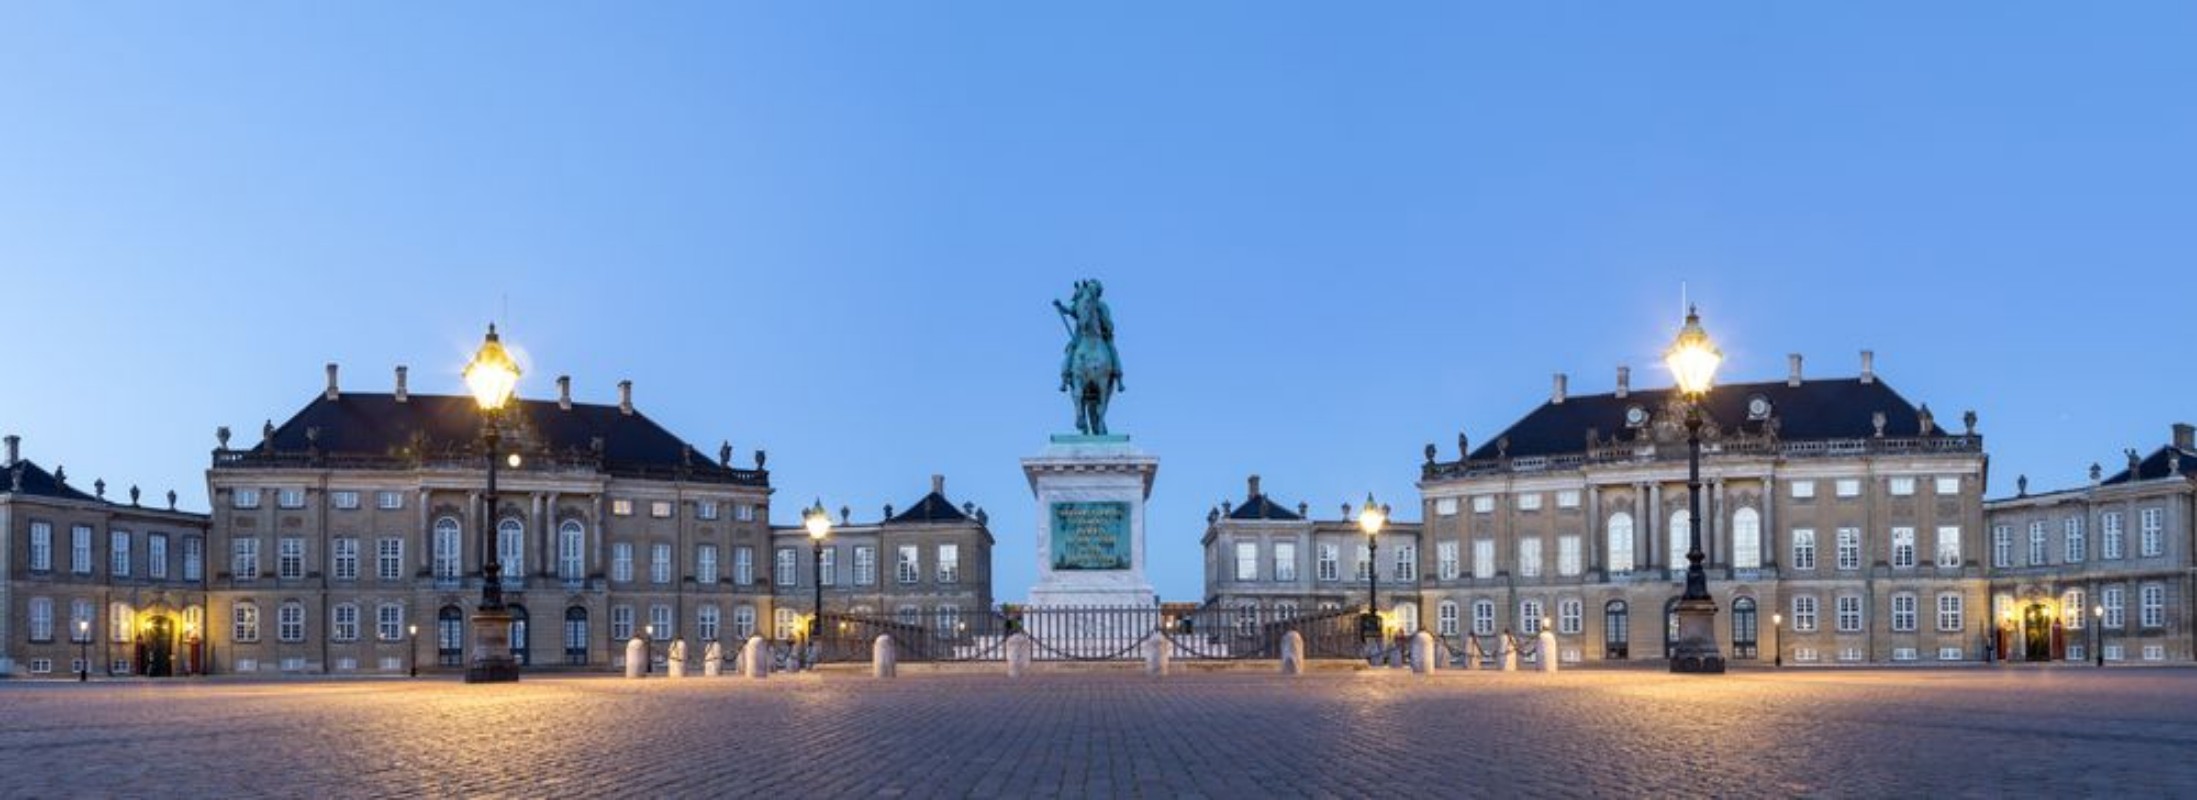 Image de Amalienborg Palace in Copenhagen by night